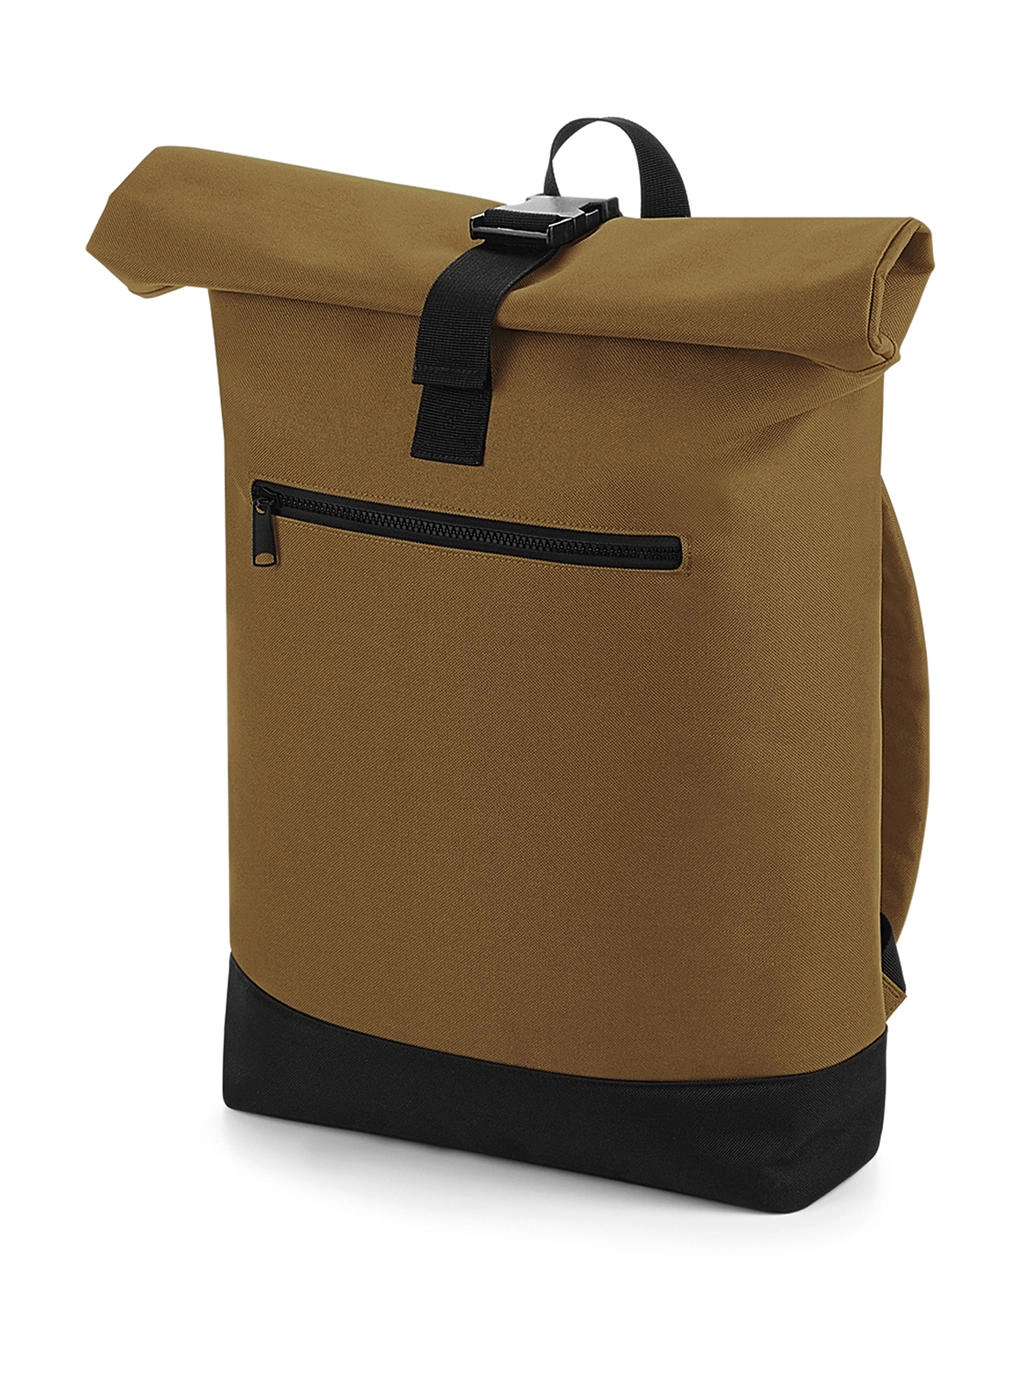 Roll-Top Backpack zum Besticken und Bedrucken in der Farbe Caramel mit Ihren Logo, Schriftzug oder Motiv.